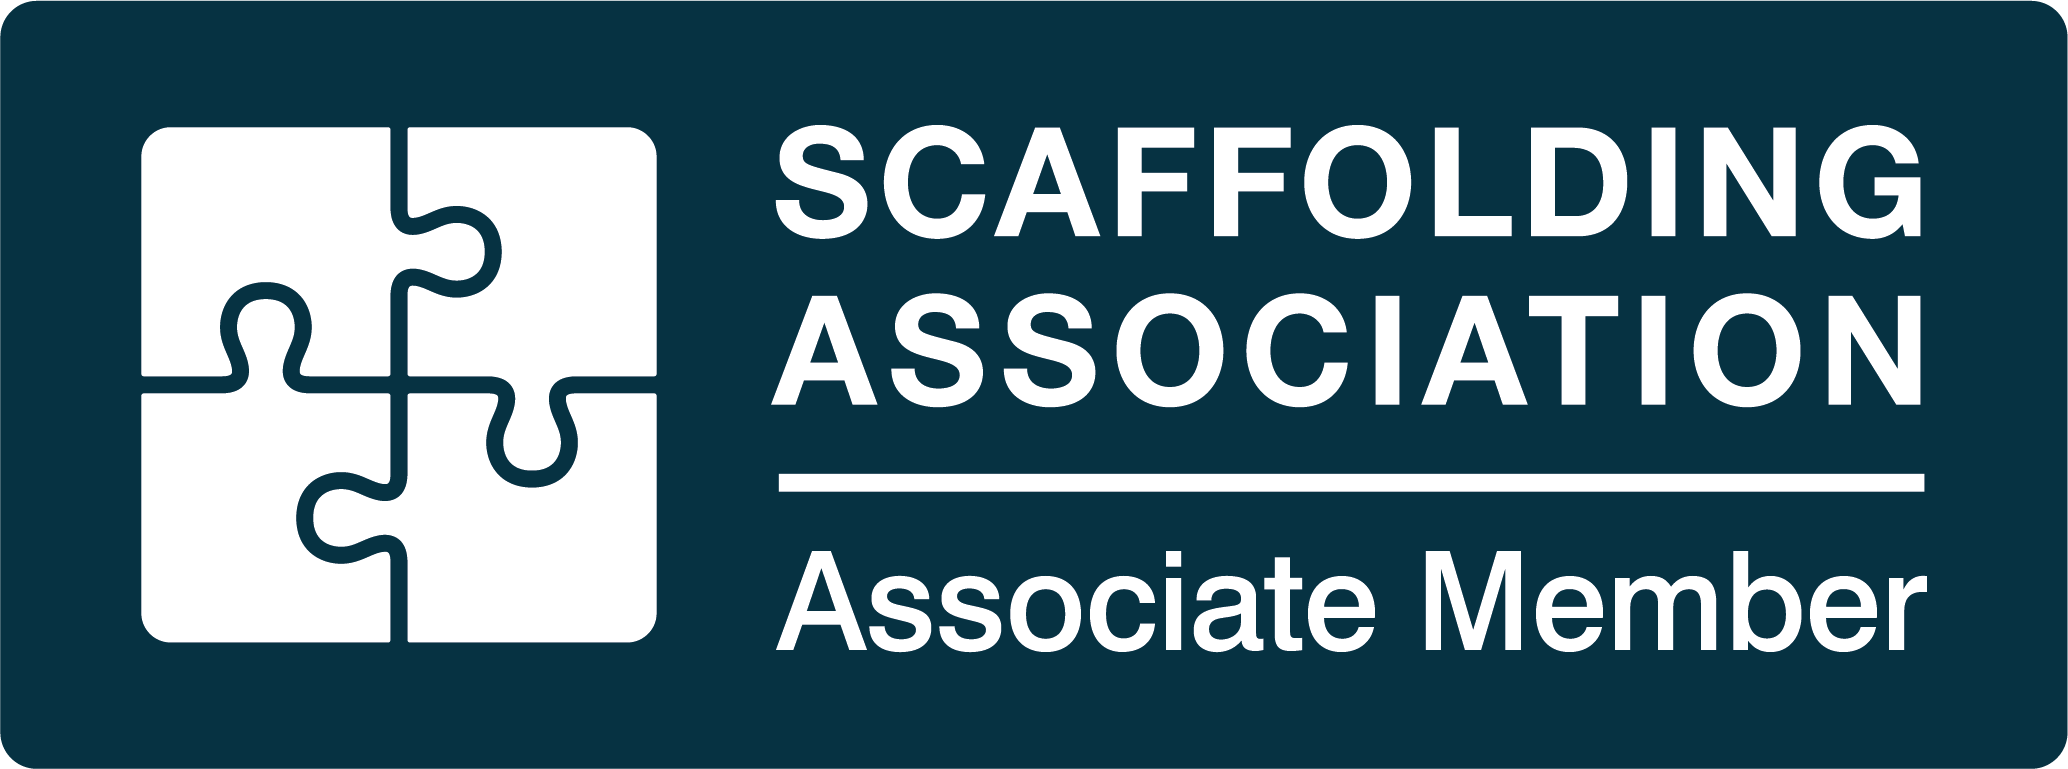 UKSSH Scaffolding Association Associate Member